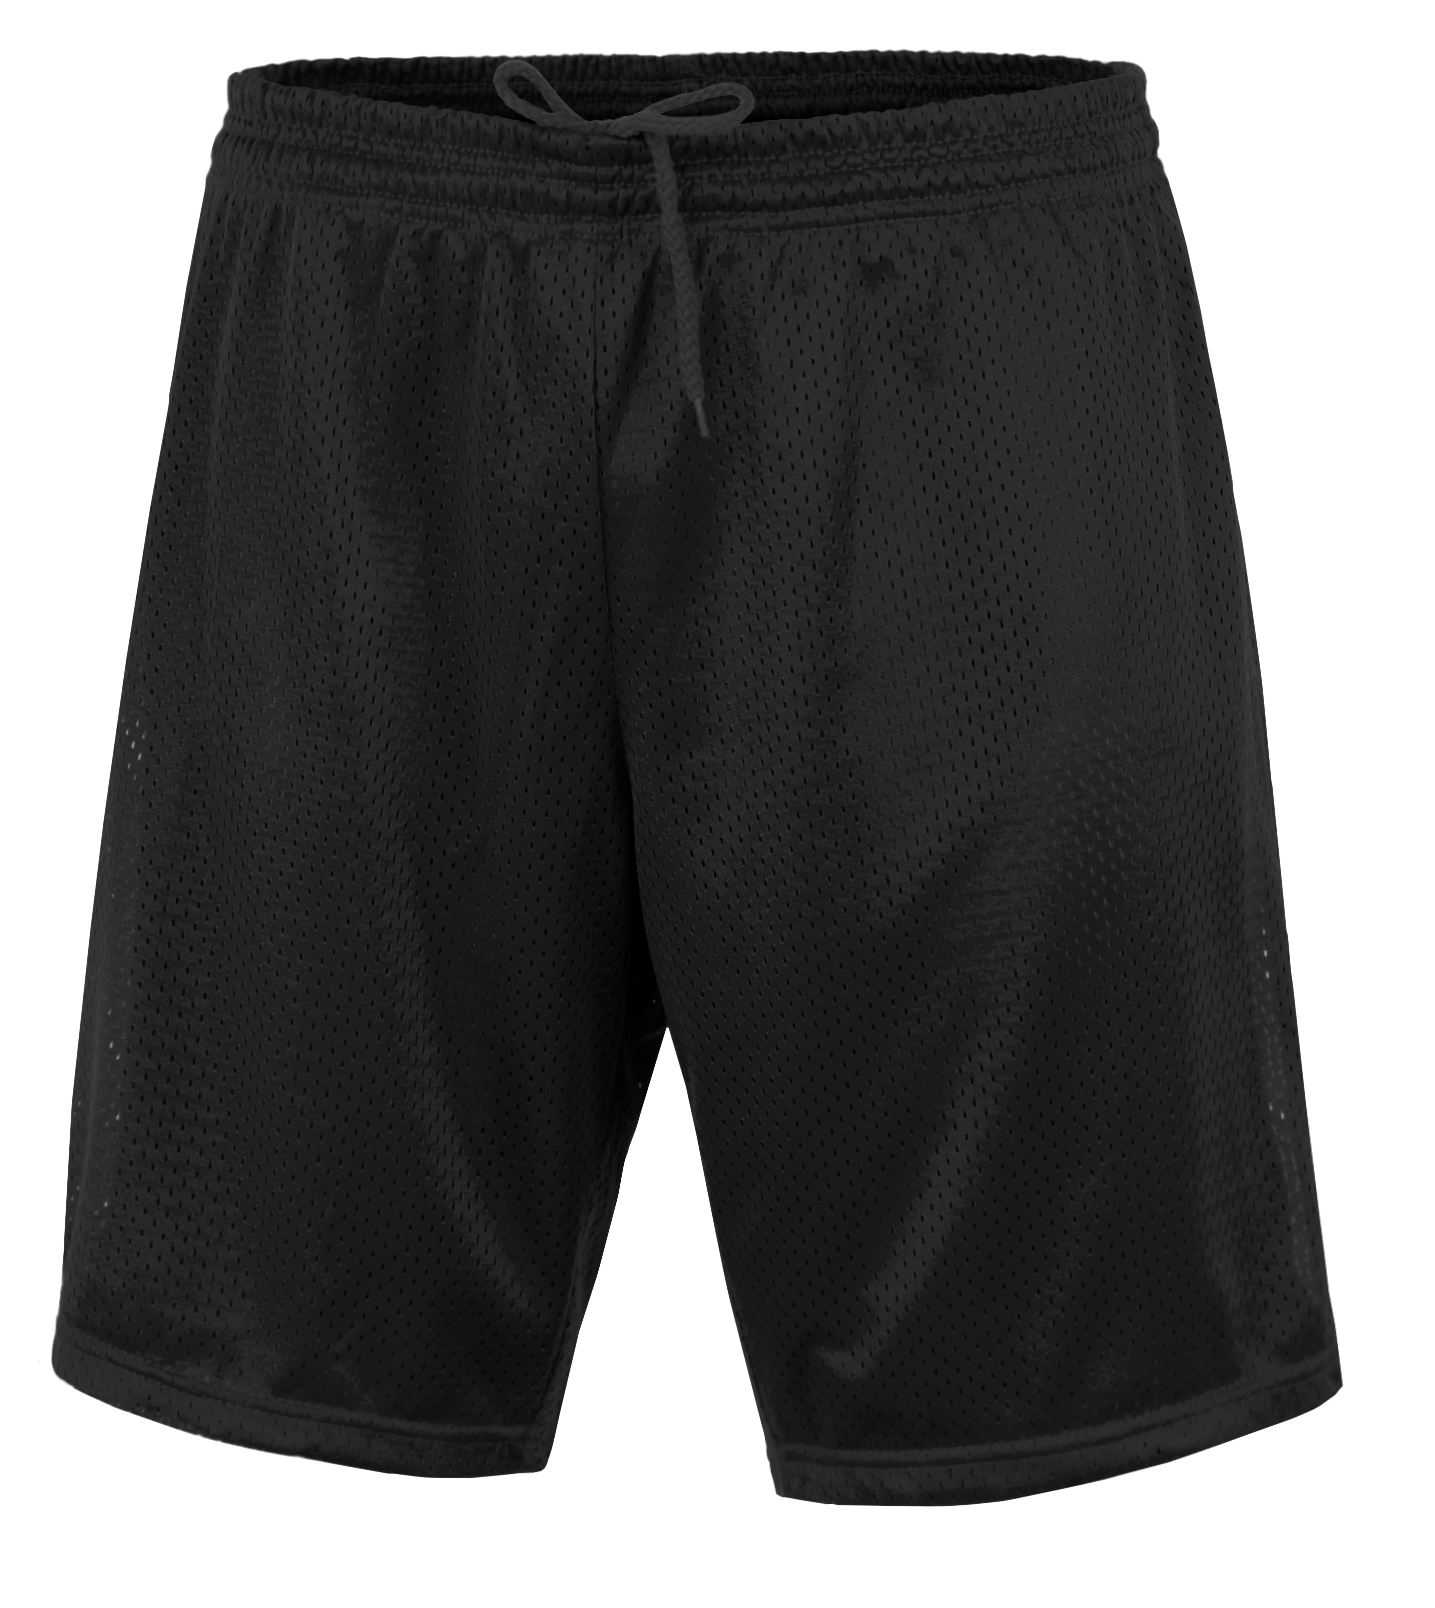 BAW Athletic Wear M1077Y - Youth 7" Cool-tek Mesh Short